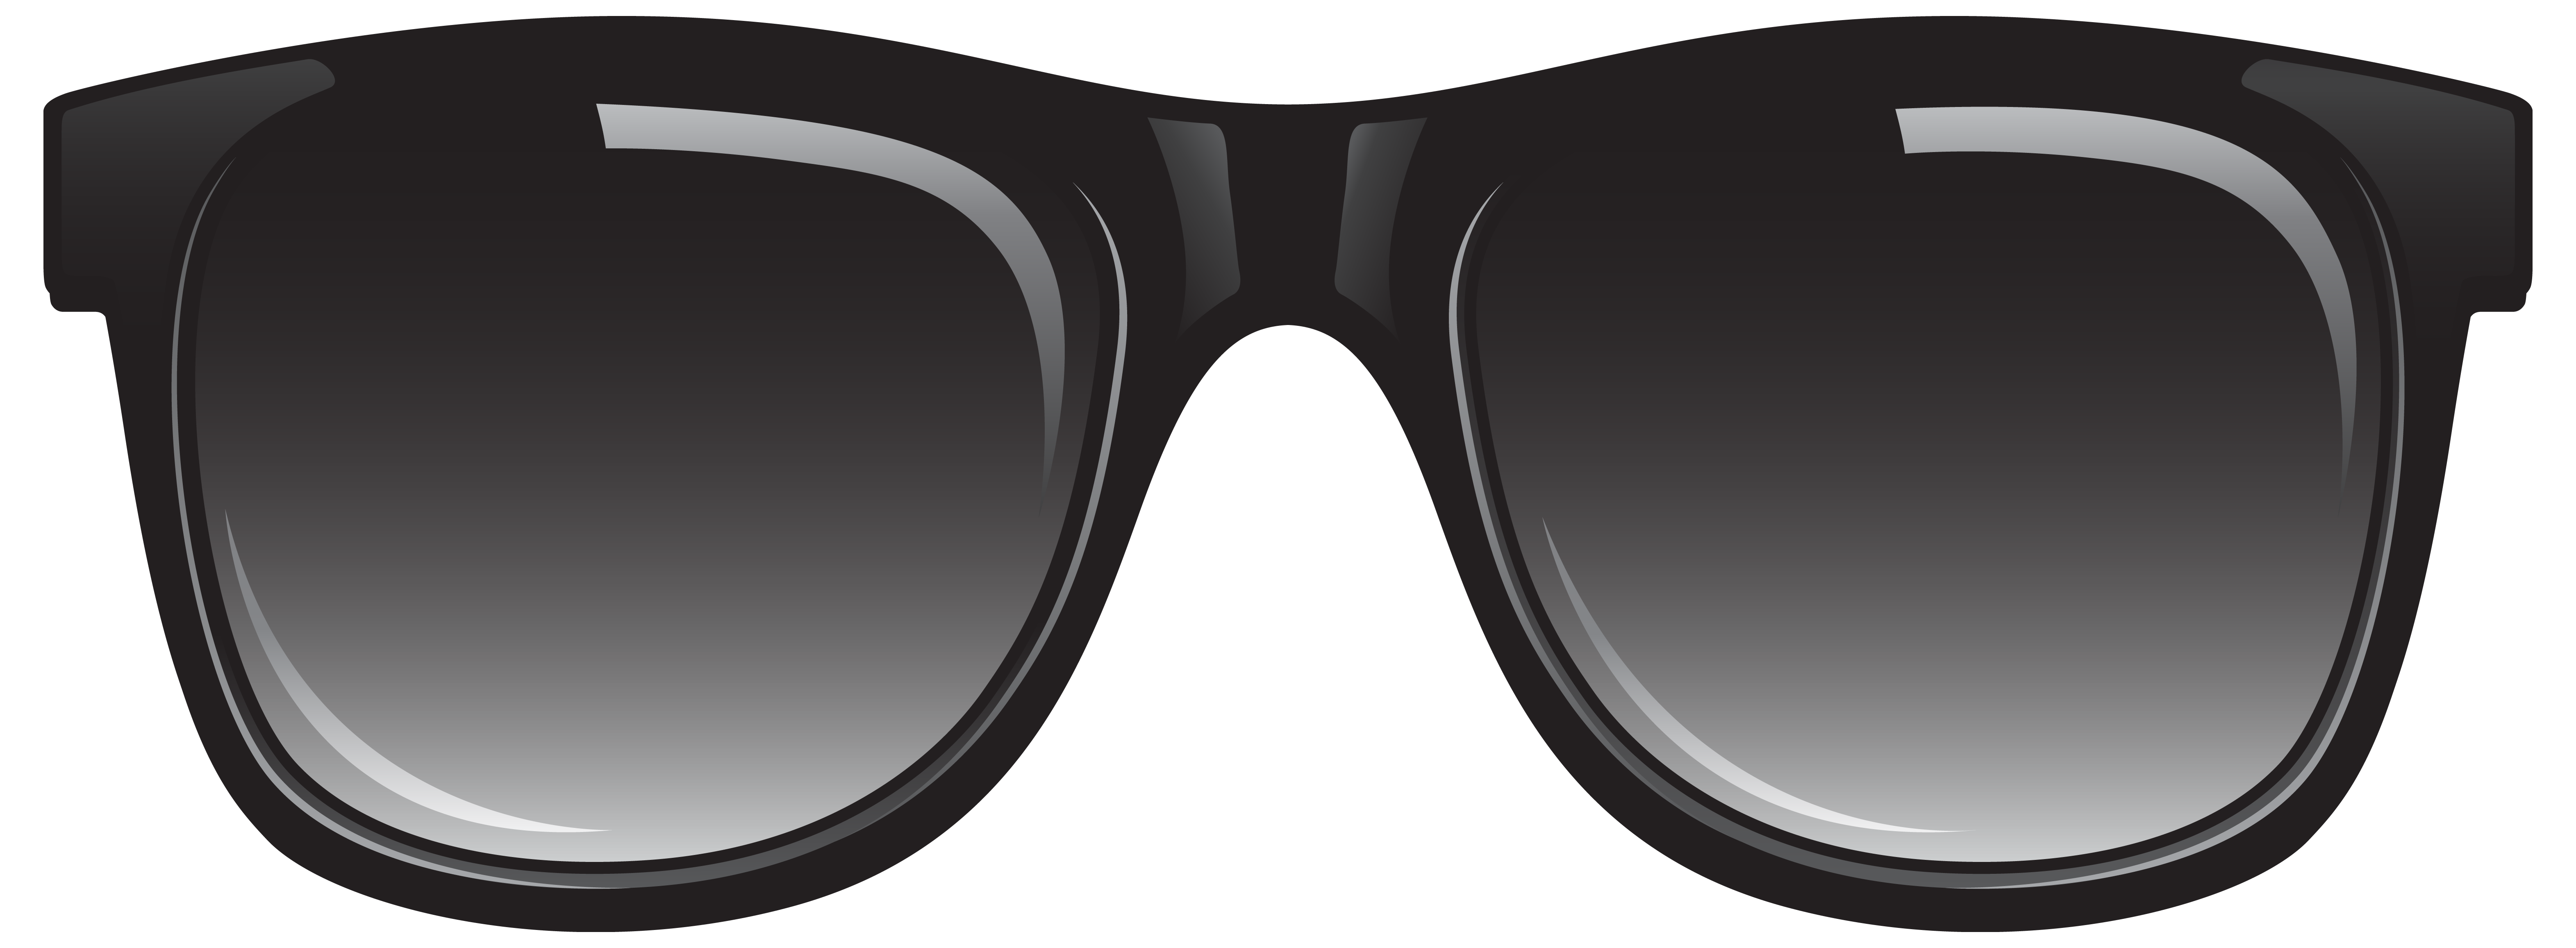 Sunglasses clipart free clip  - Clip Art Sunglasses